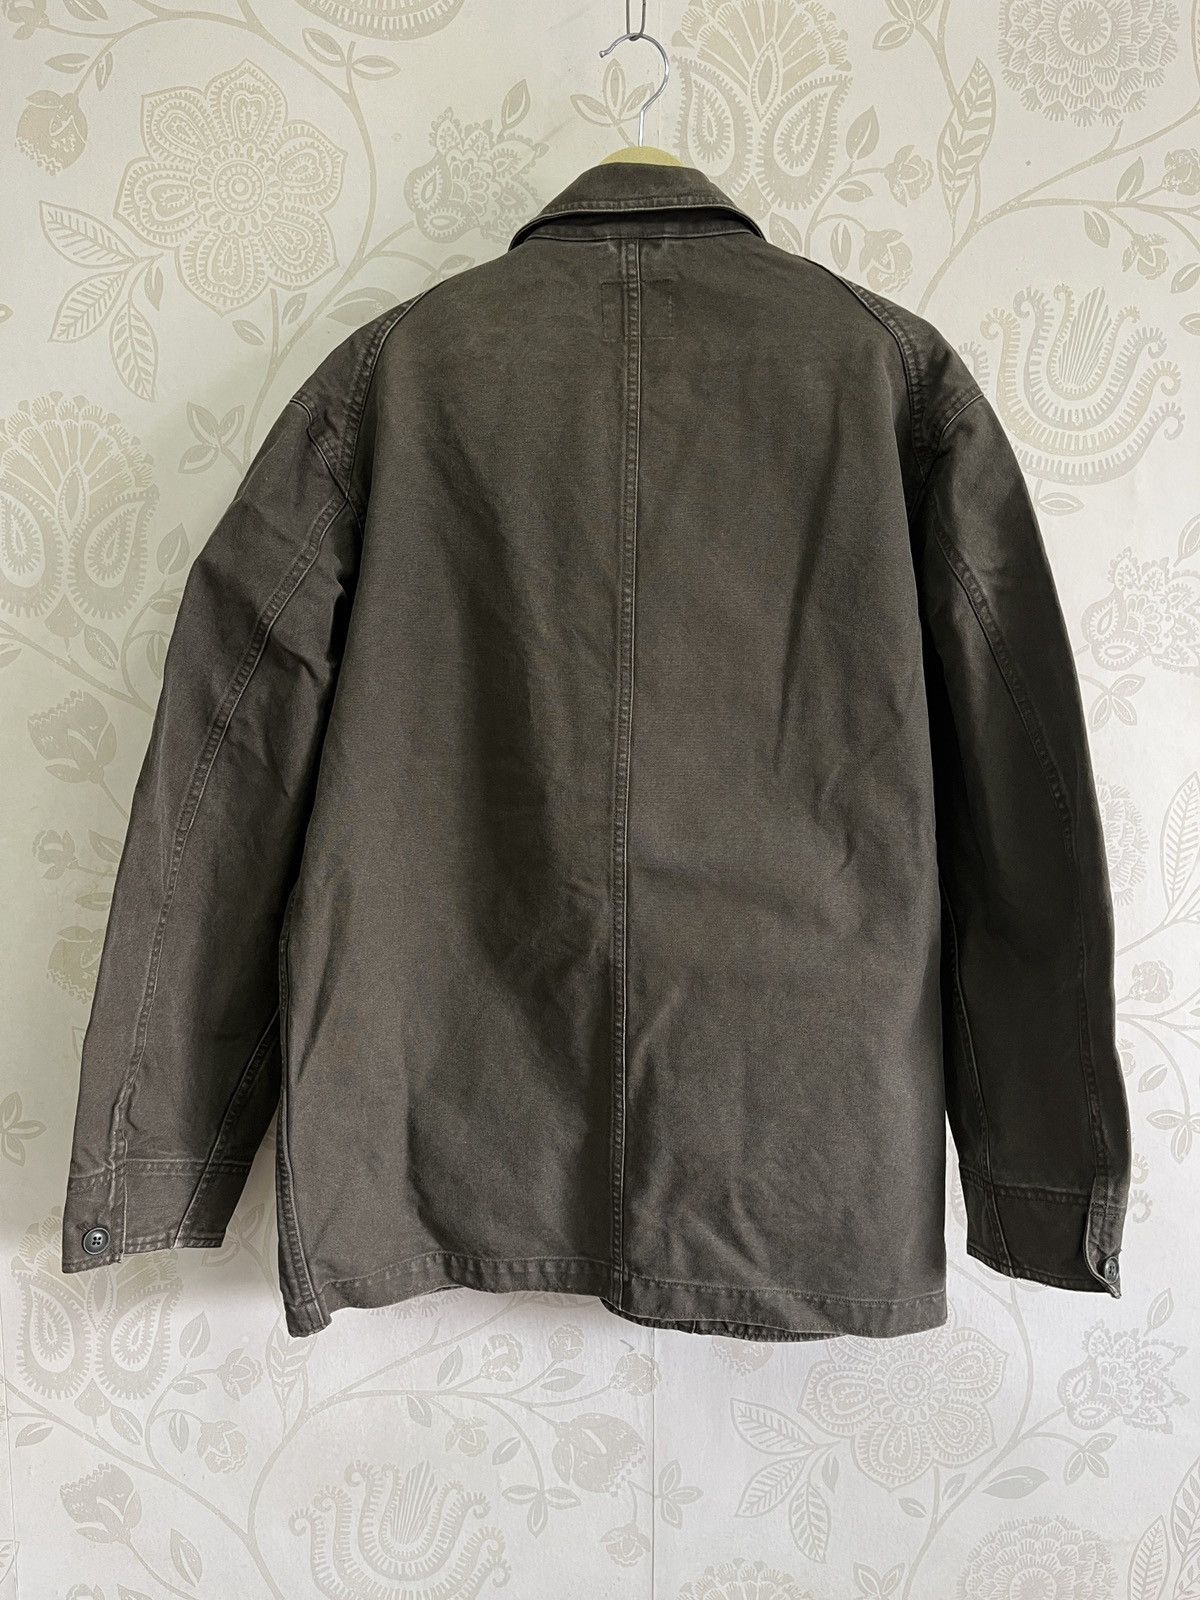 Uniqlo Chore Jacket Japan Size XL - 4